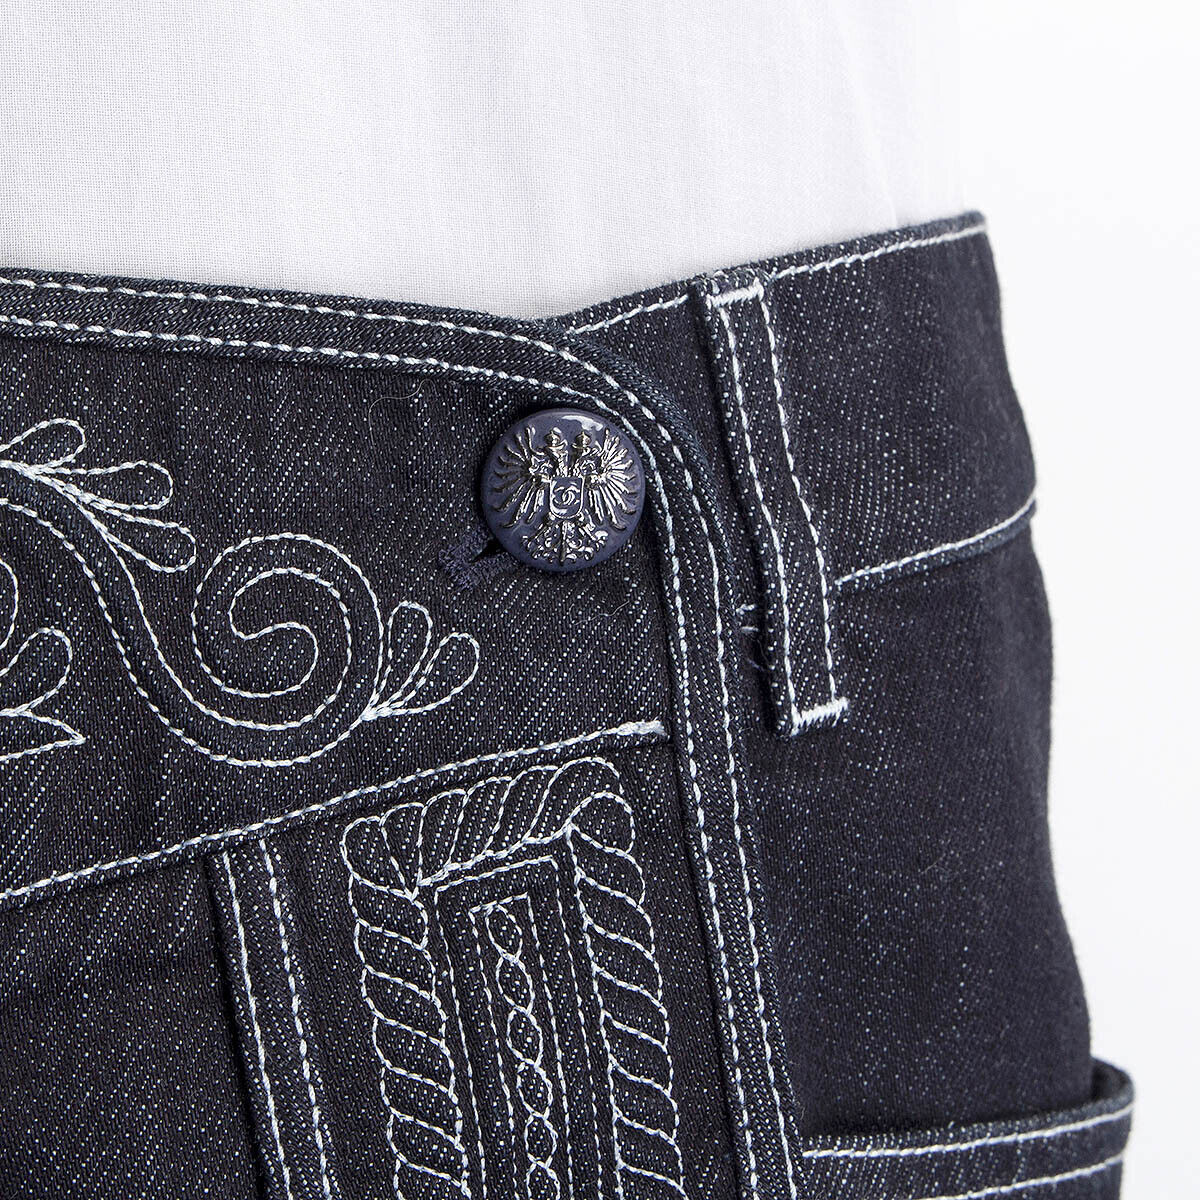 65536 auth CHANEL dark blue 2015 SALZBURG EMBROIDERED DENIM Shorts Pants 38  S